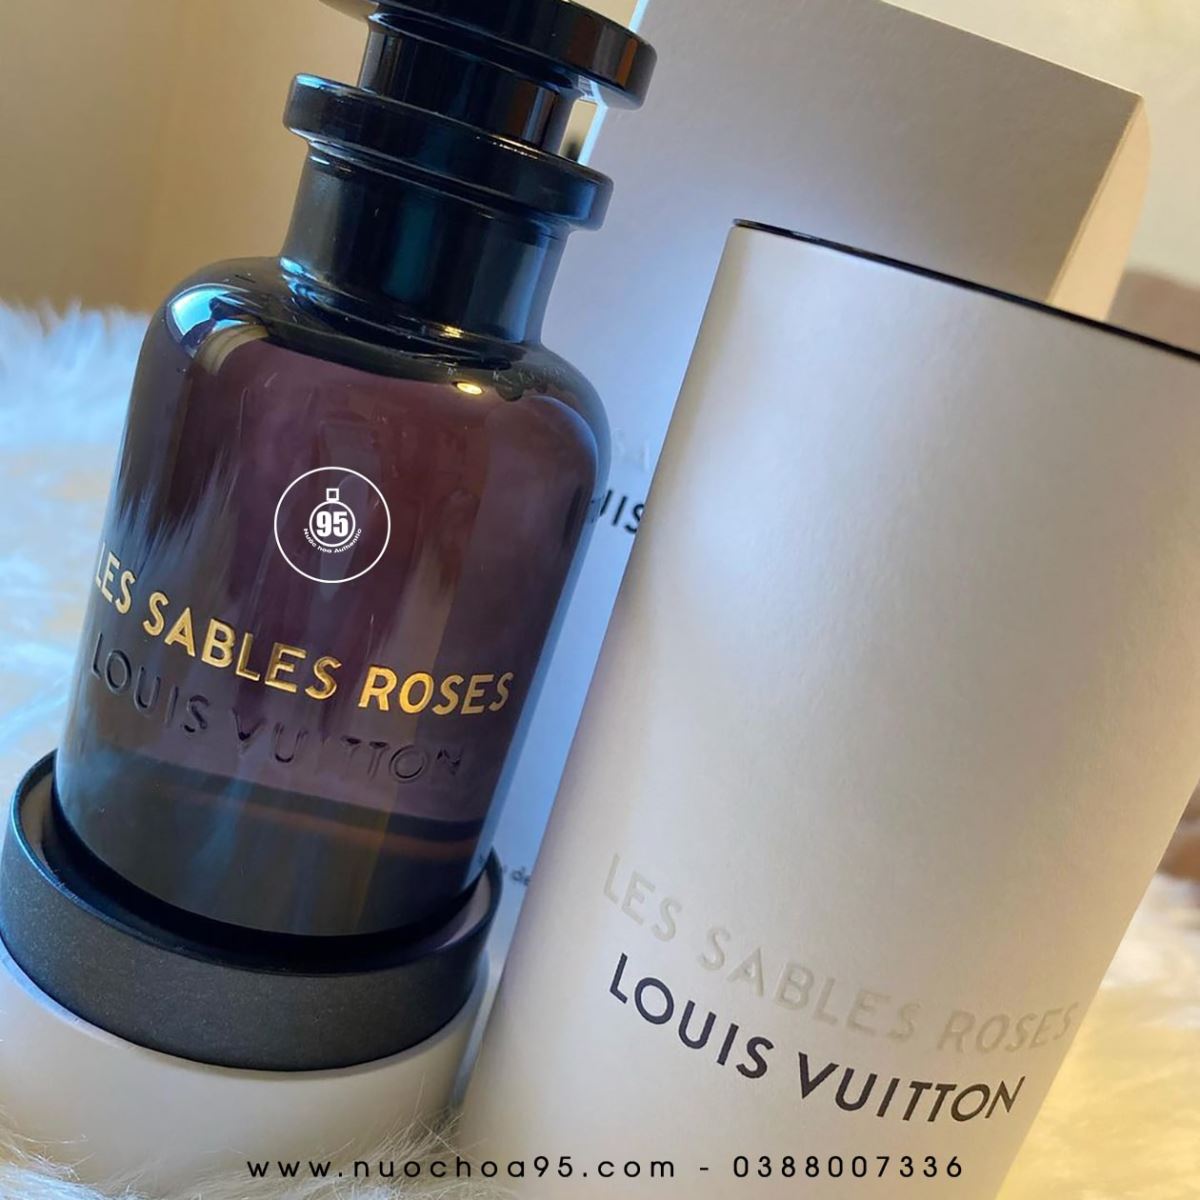 Nước hoa Louis Vuitton Les Sables Roses - Ảnh 3